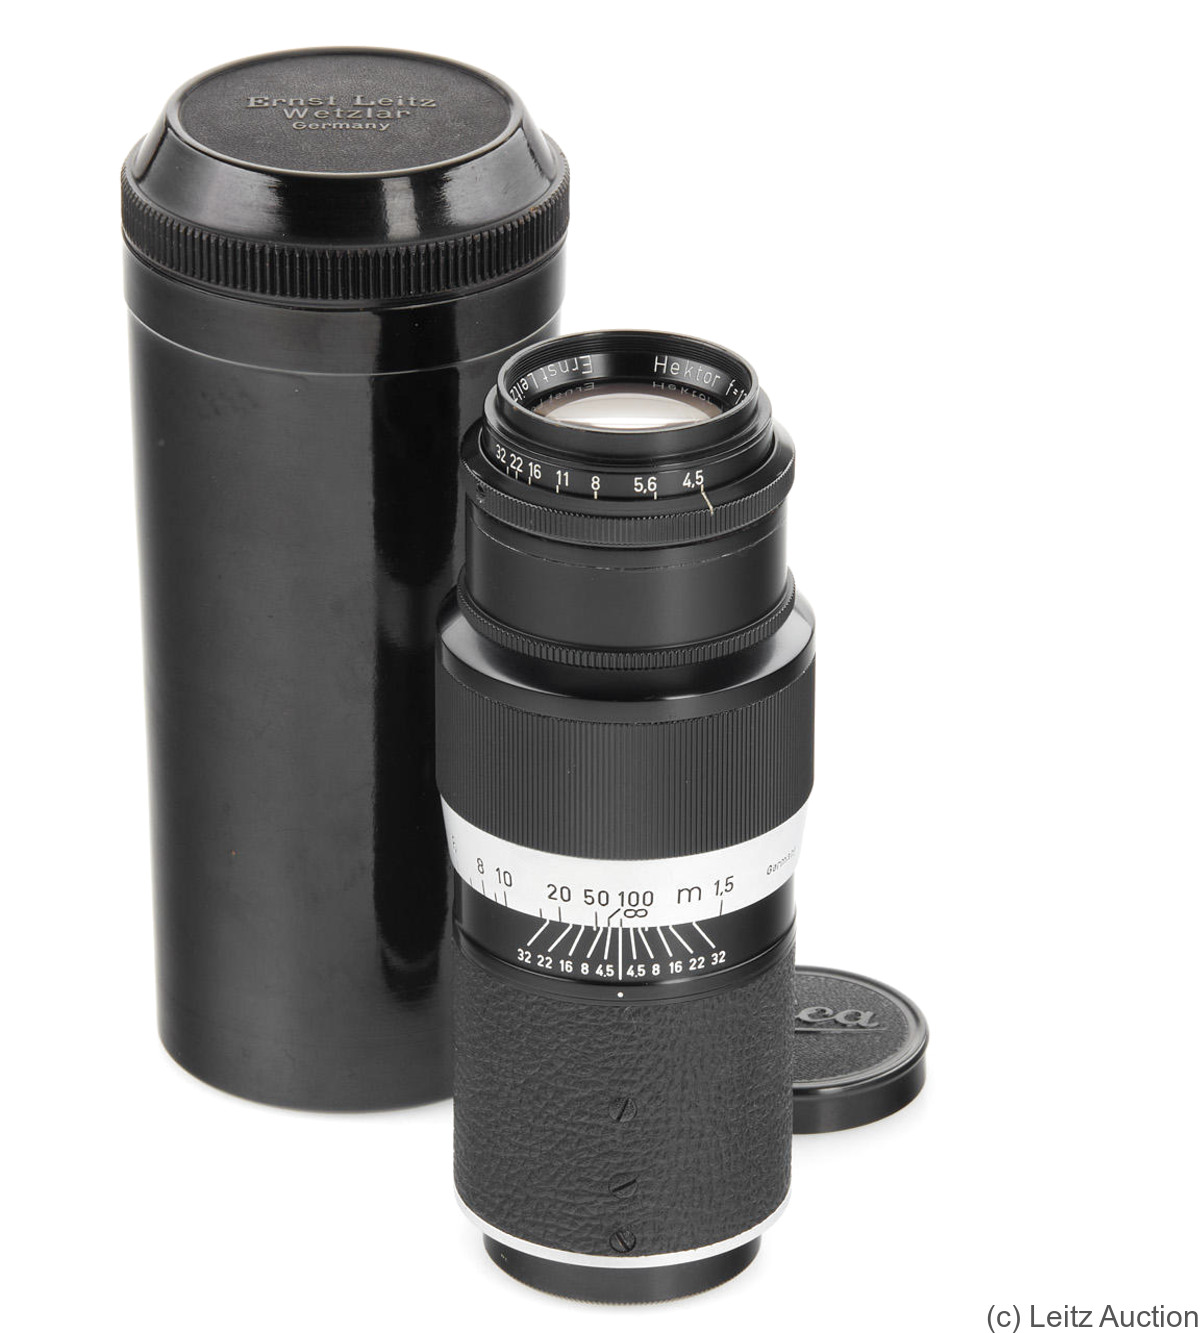 Leitz: 135mm (13.5cm) f4.5 Hektor (SM, black/chrome) camera